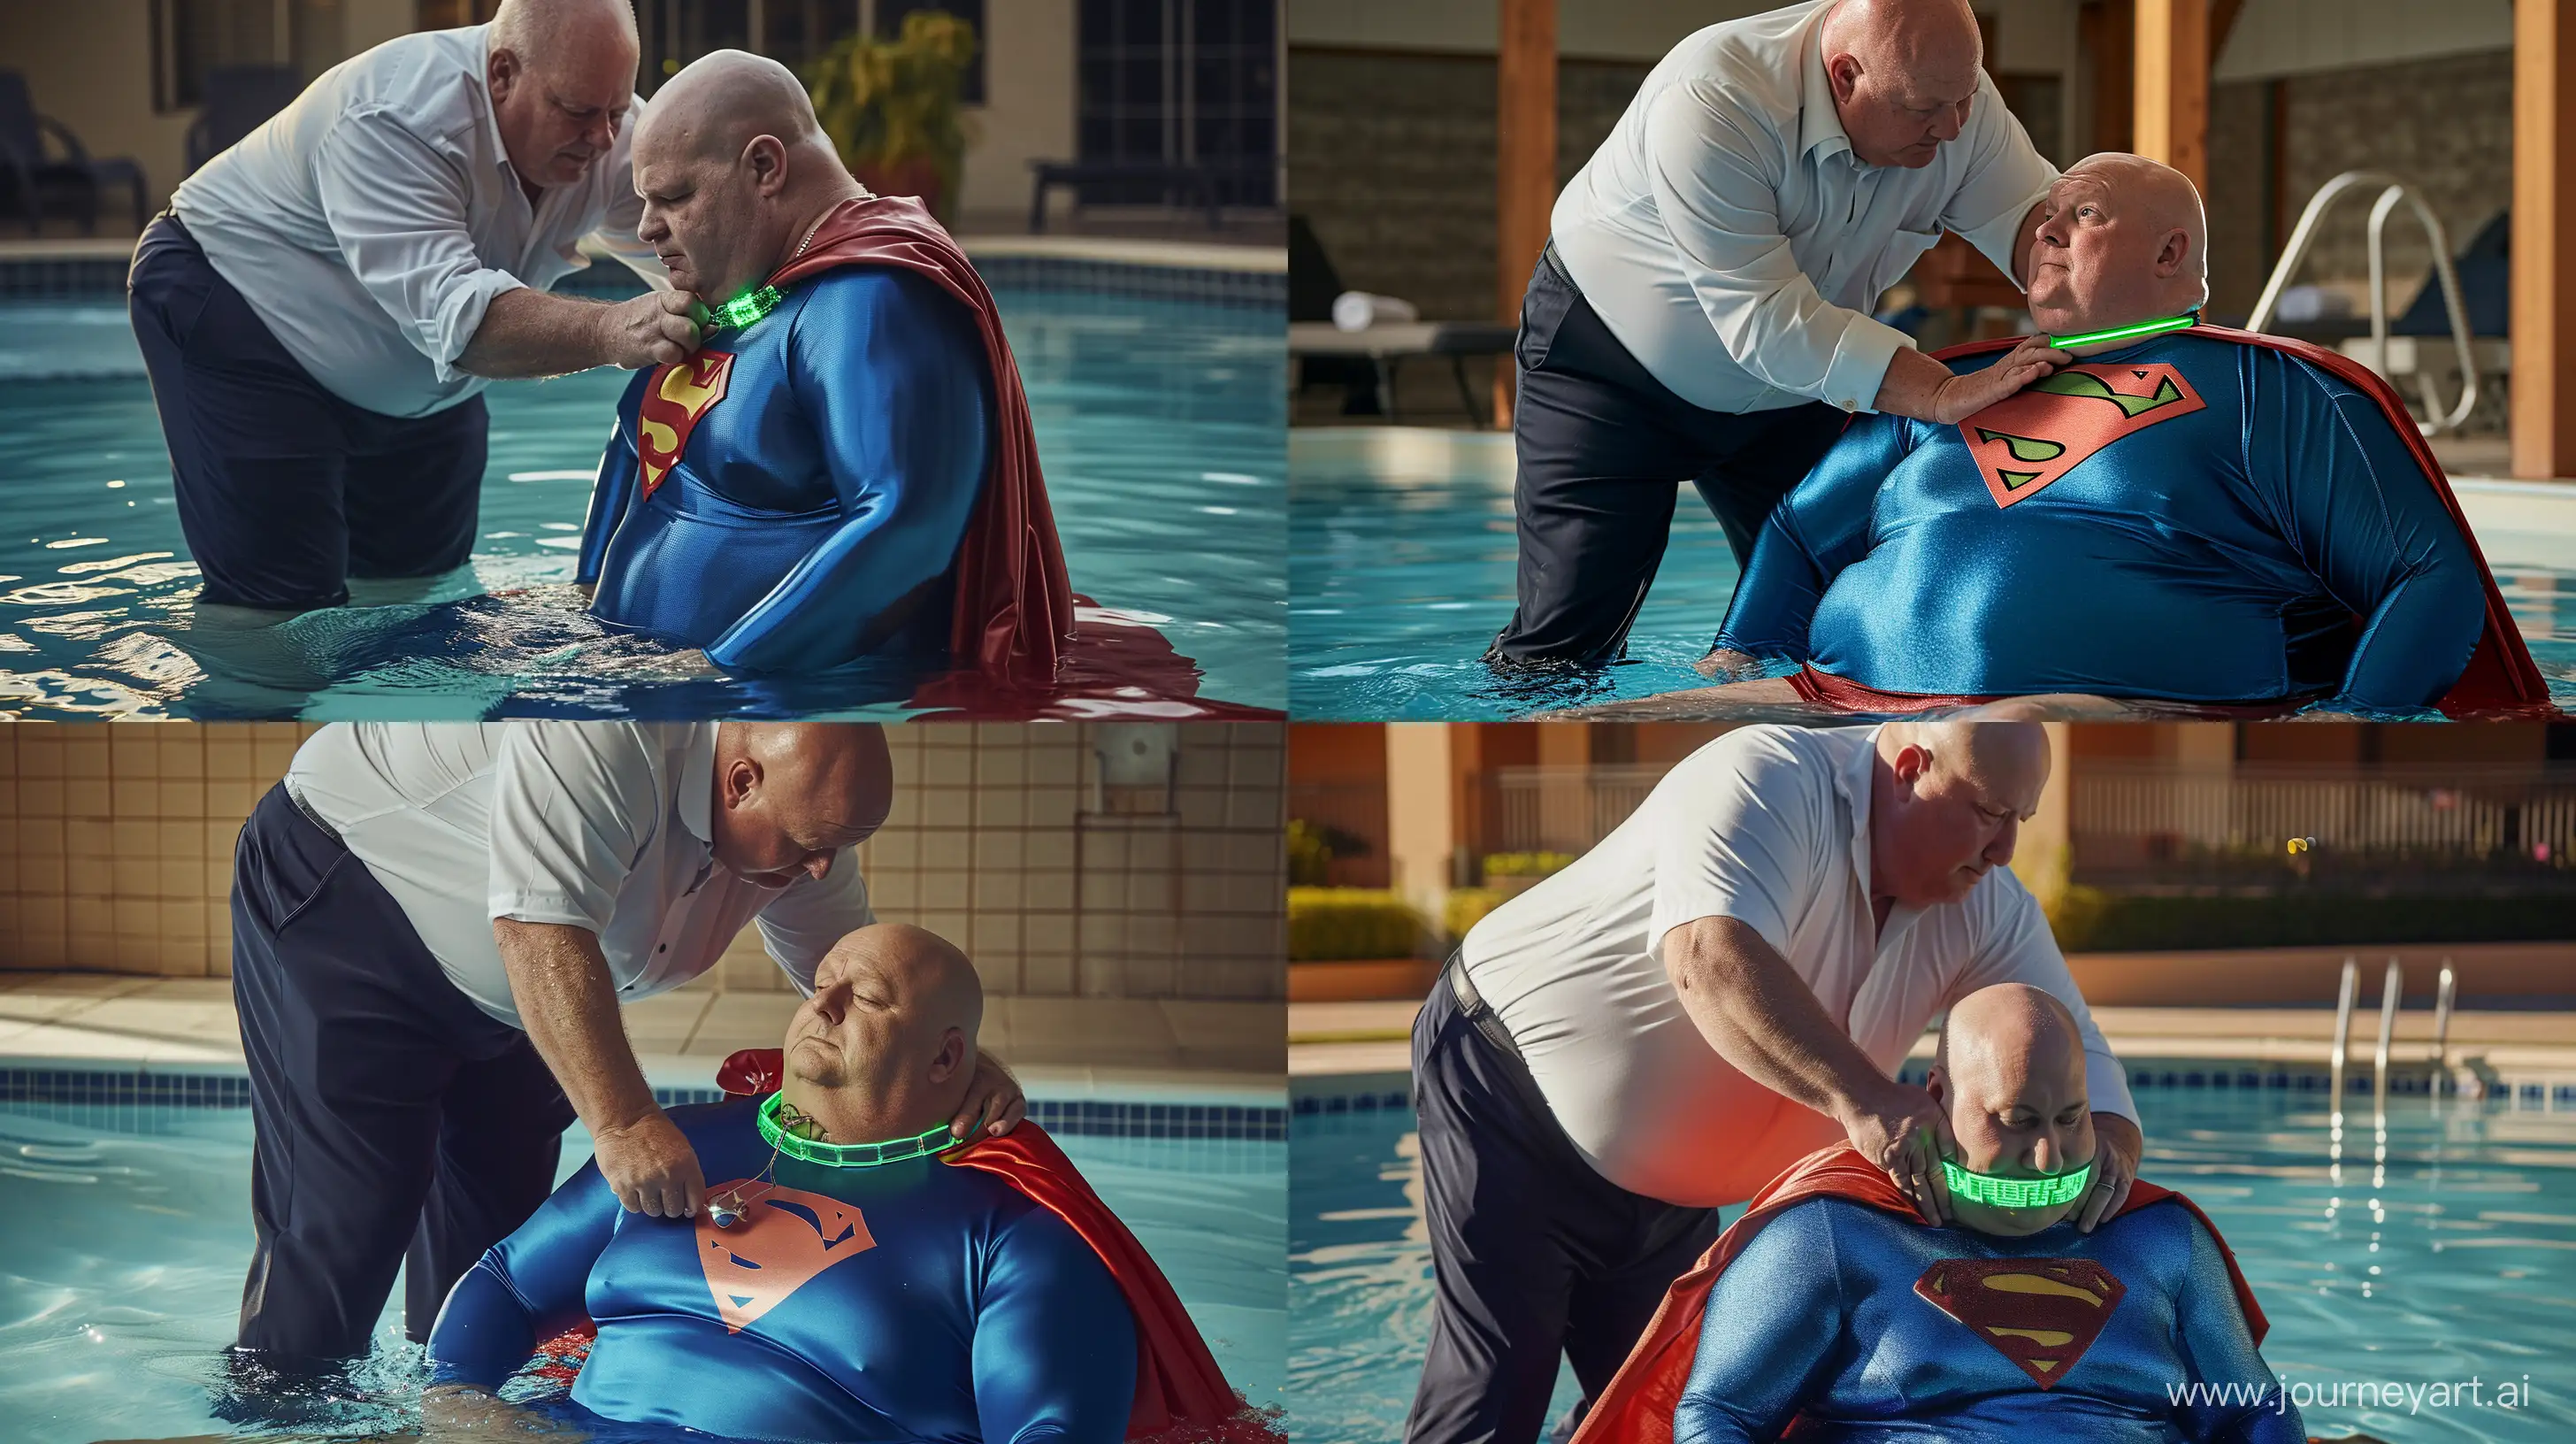 Elderly-Mens-Aquatic-Adventure-Collar-Fitting-and-Superhero-Splash